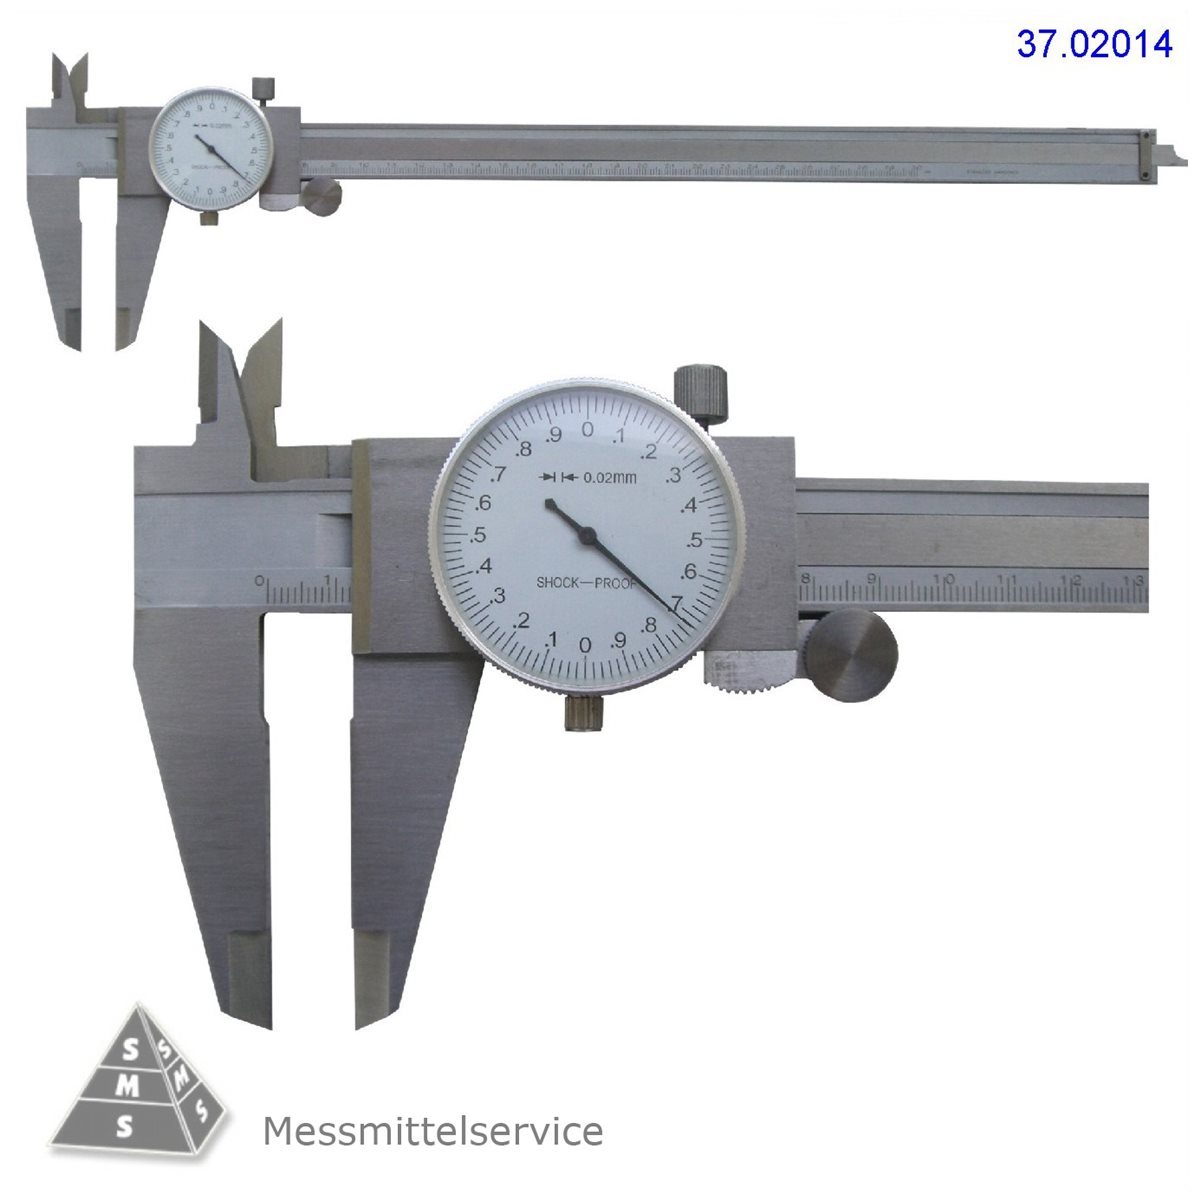 Peter Slotta Messmittelservice - Messschieber Uhrenmessschieber Schieblehre  mit Rundskala, Messbereiche bis 300 / 0,02 mm